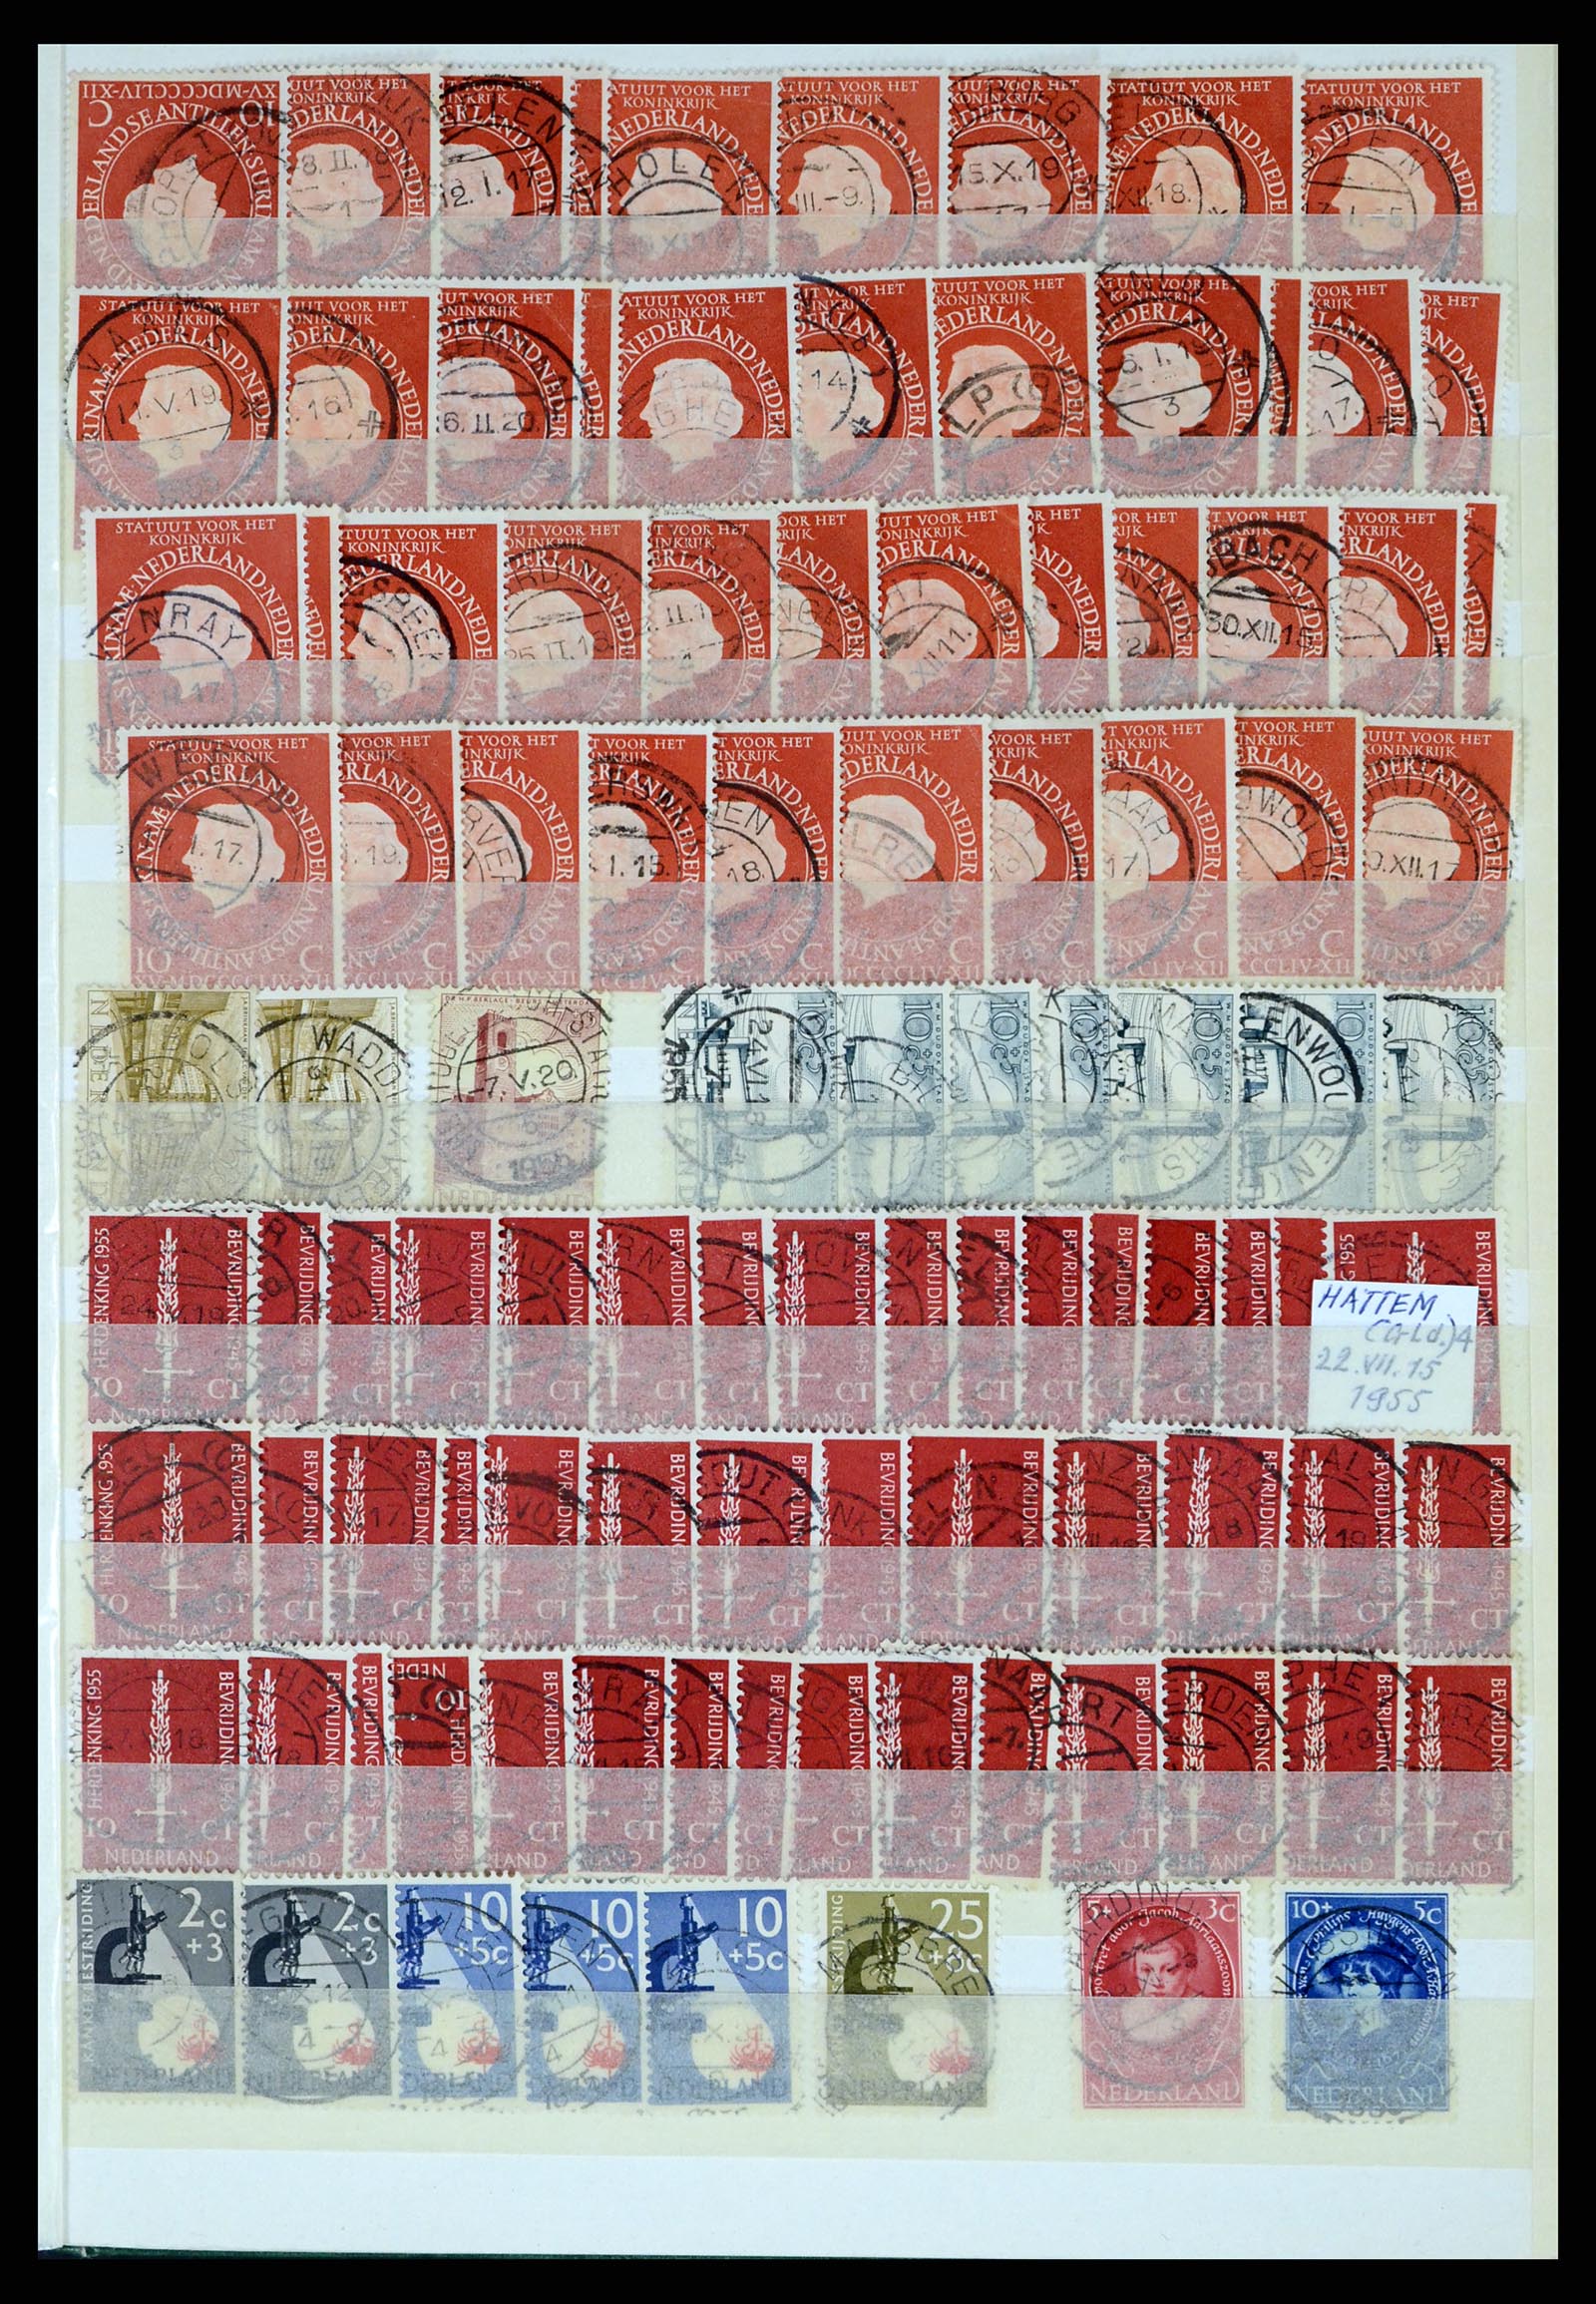 37424 051 - Postzegelverzameling 37424 Nederland kortebalk stempels.